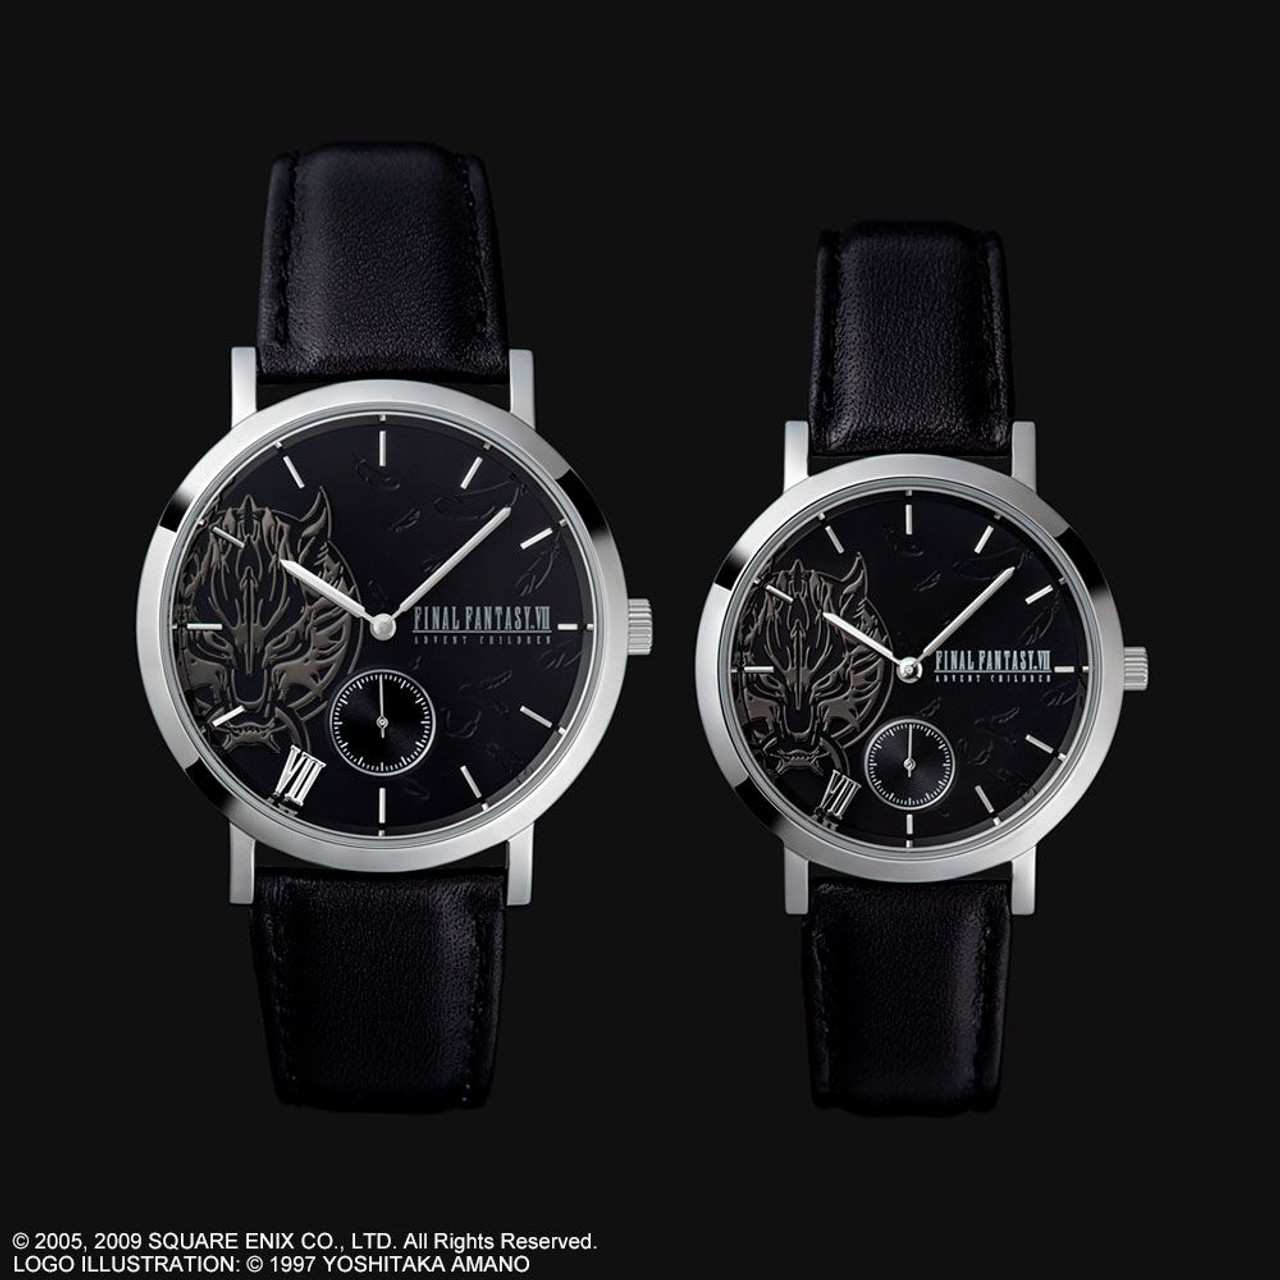 ファイナルファンタジー VII 39mm モデル Limited Edition - 腕時計 ...